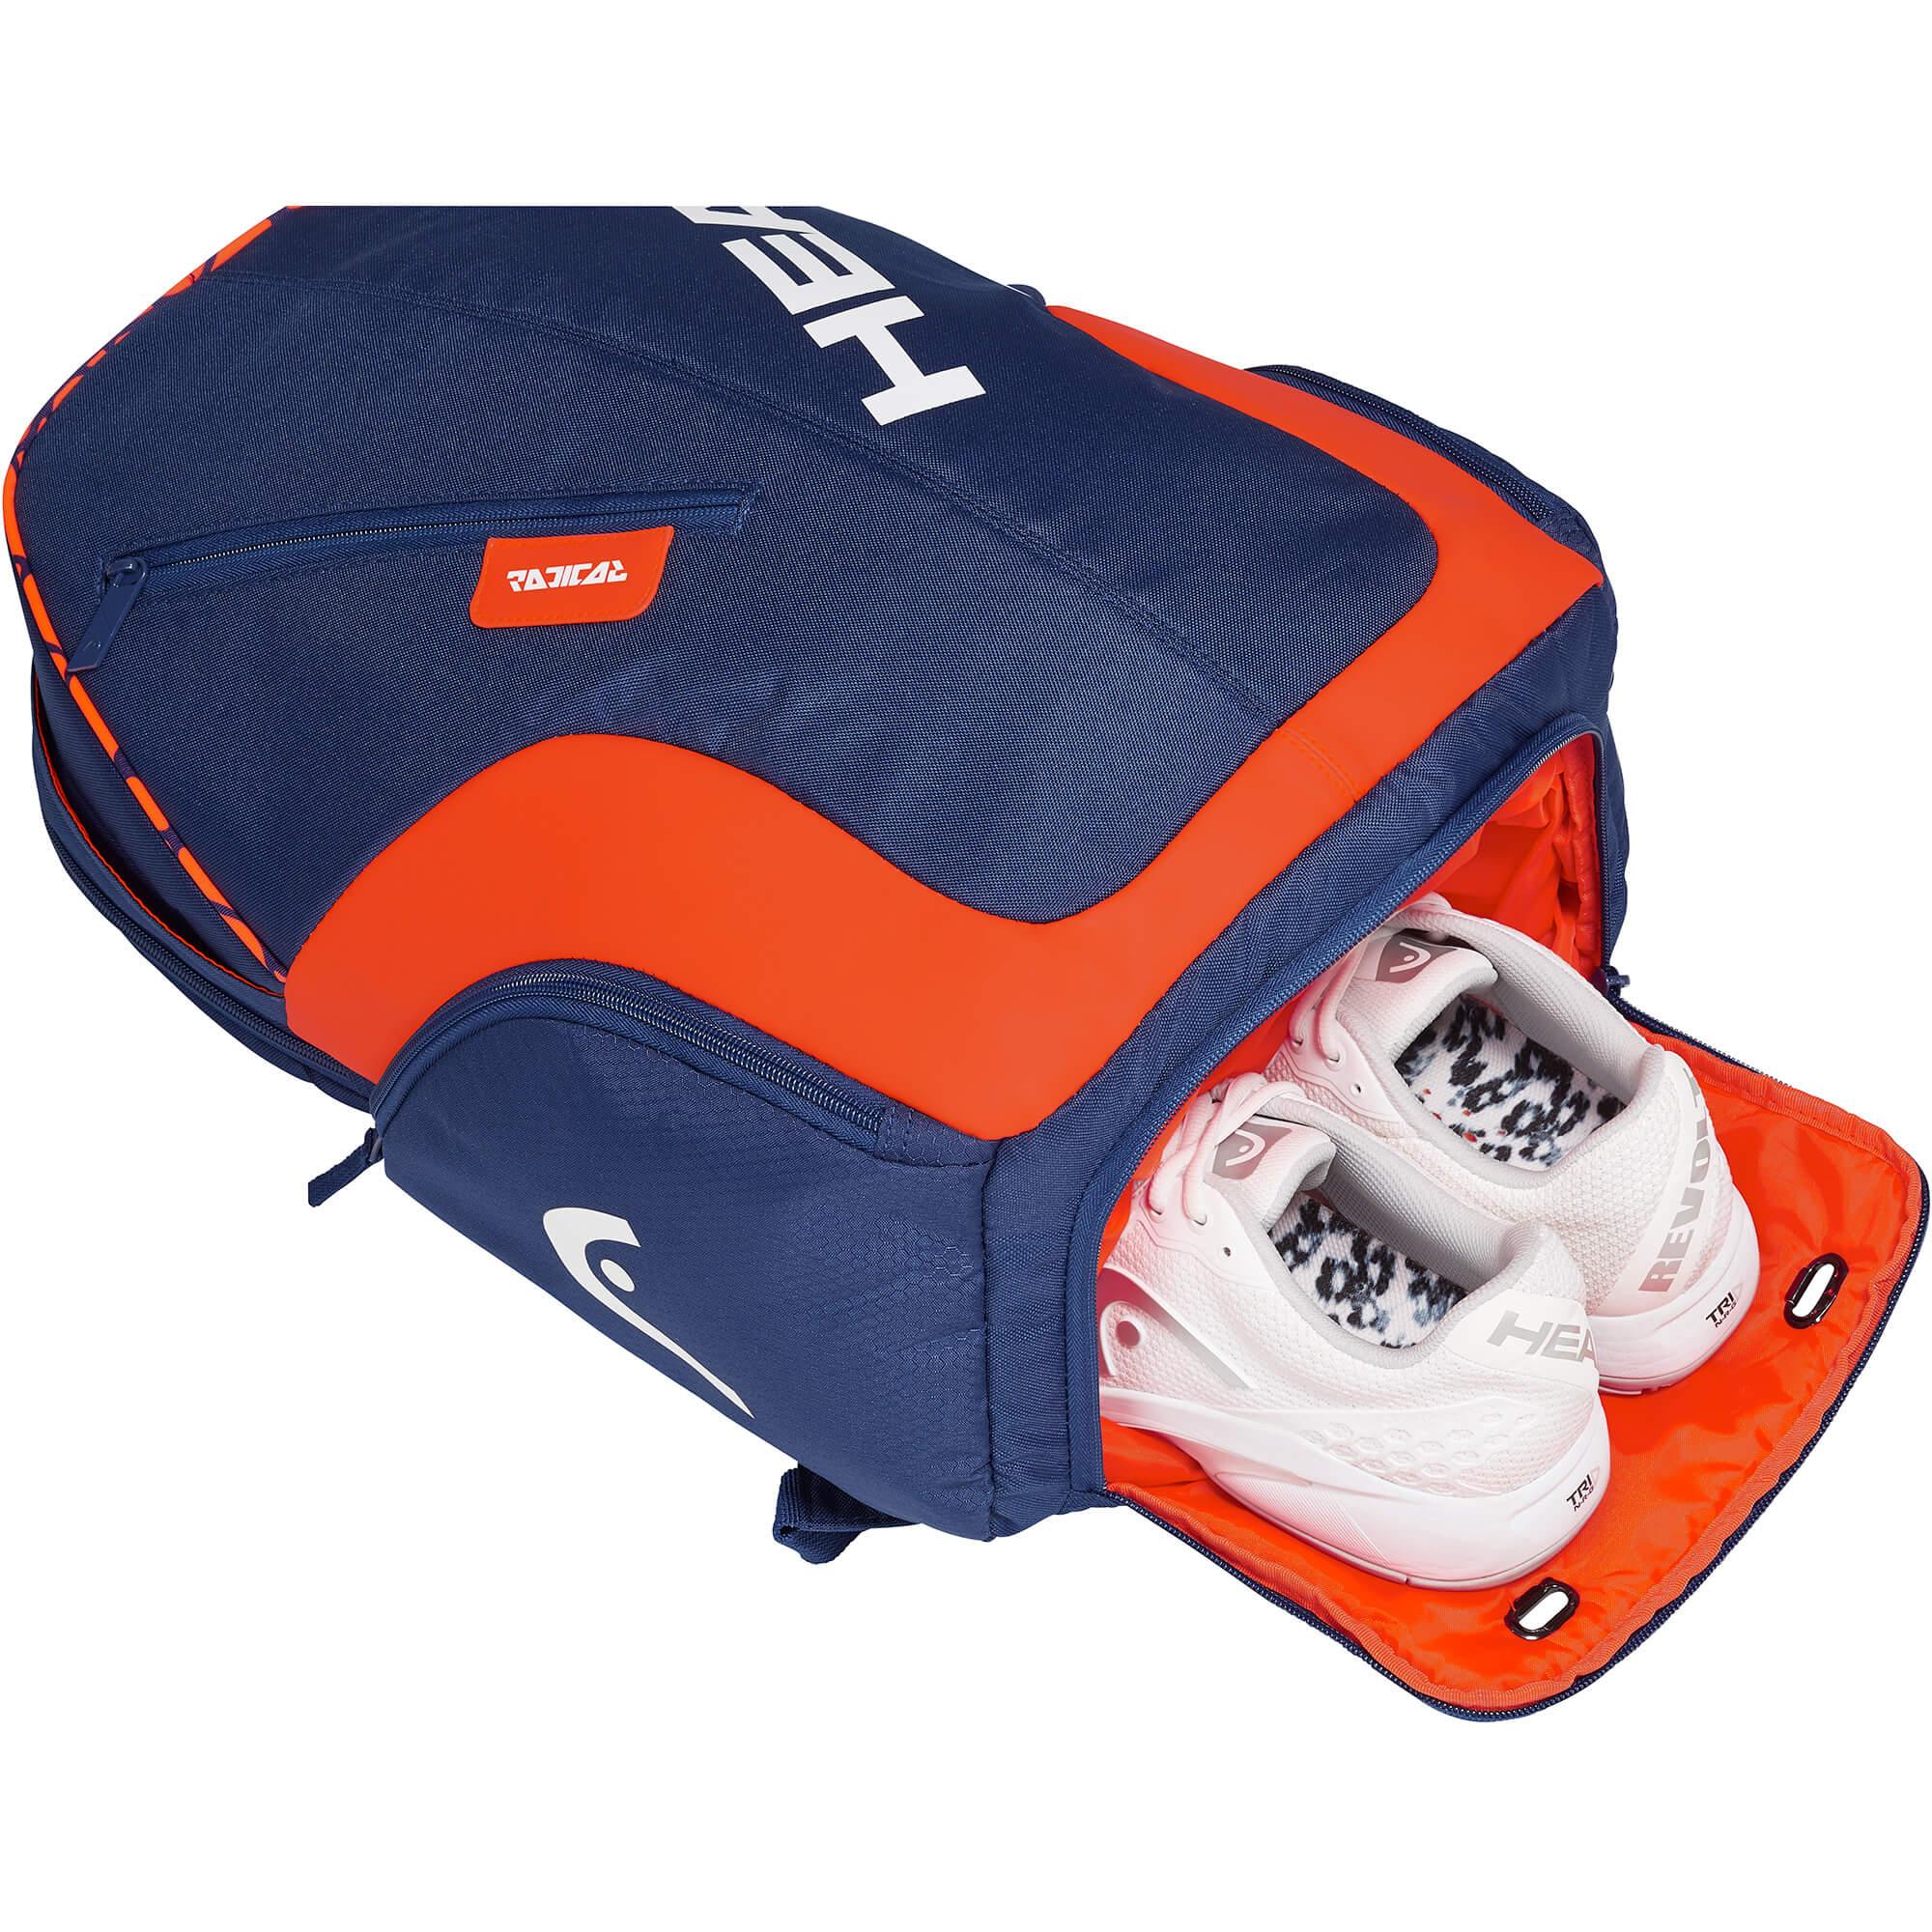 HEAD Radical Rebel Tennis Backpack Navy Blue/Orange 